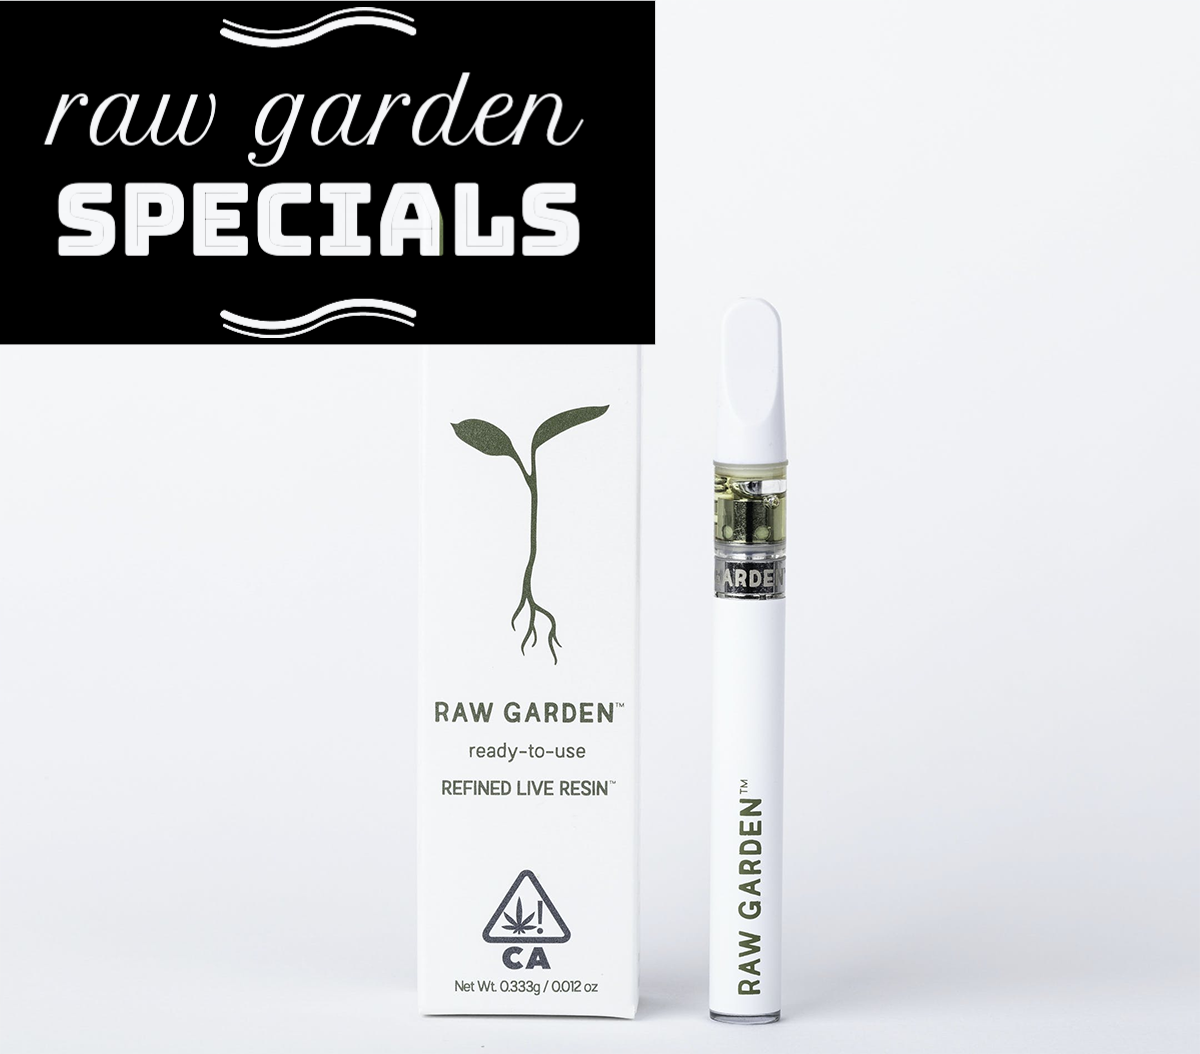 Raw Garden Specials